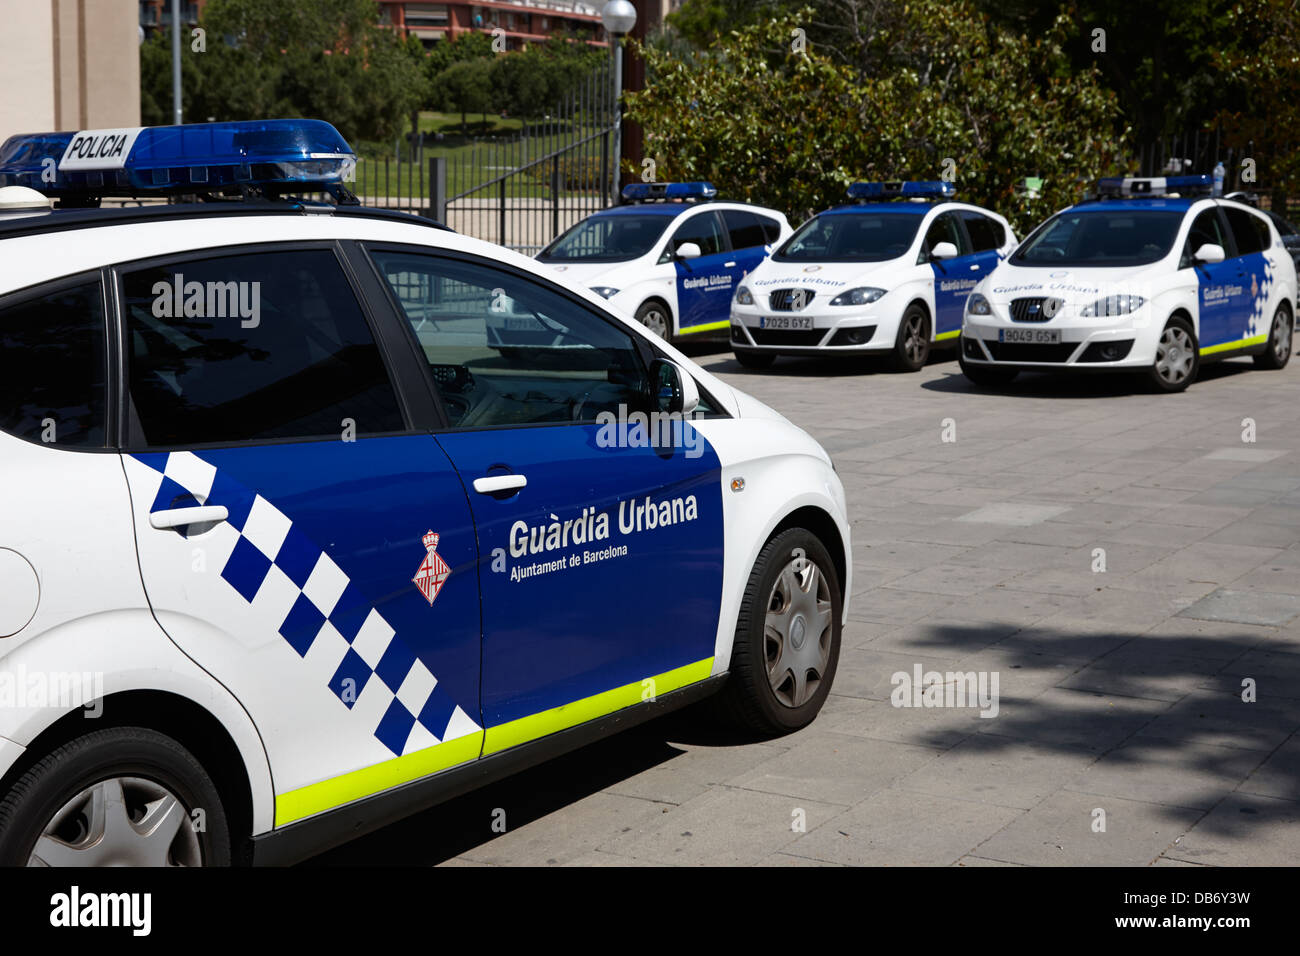 policia guardia urbana city police patrol cars Barcelona Catalonia Spain Stock Photo